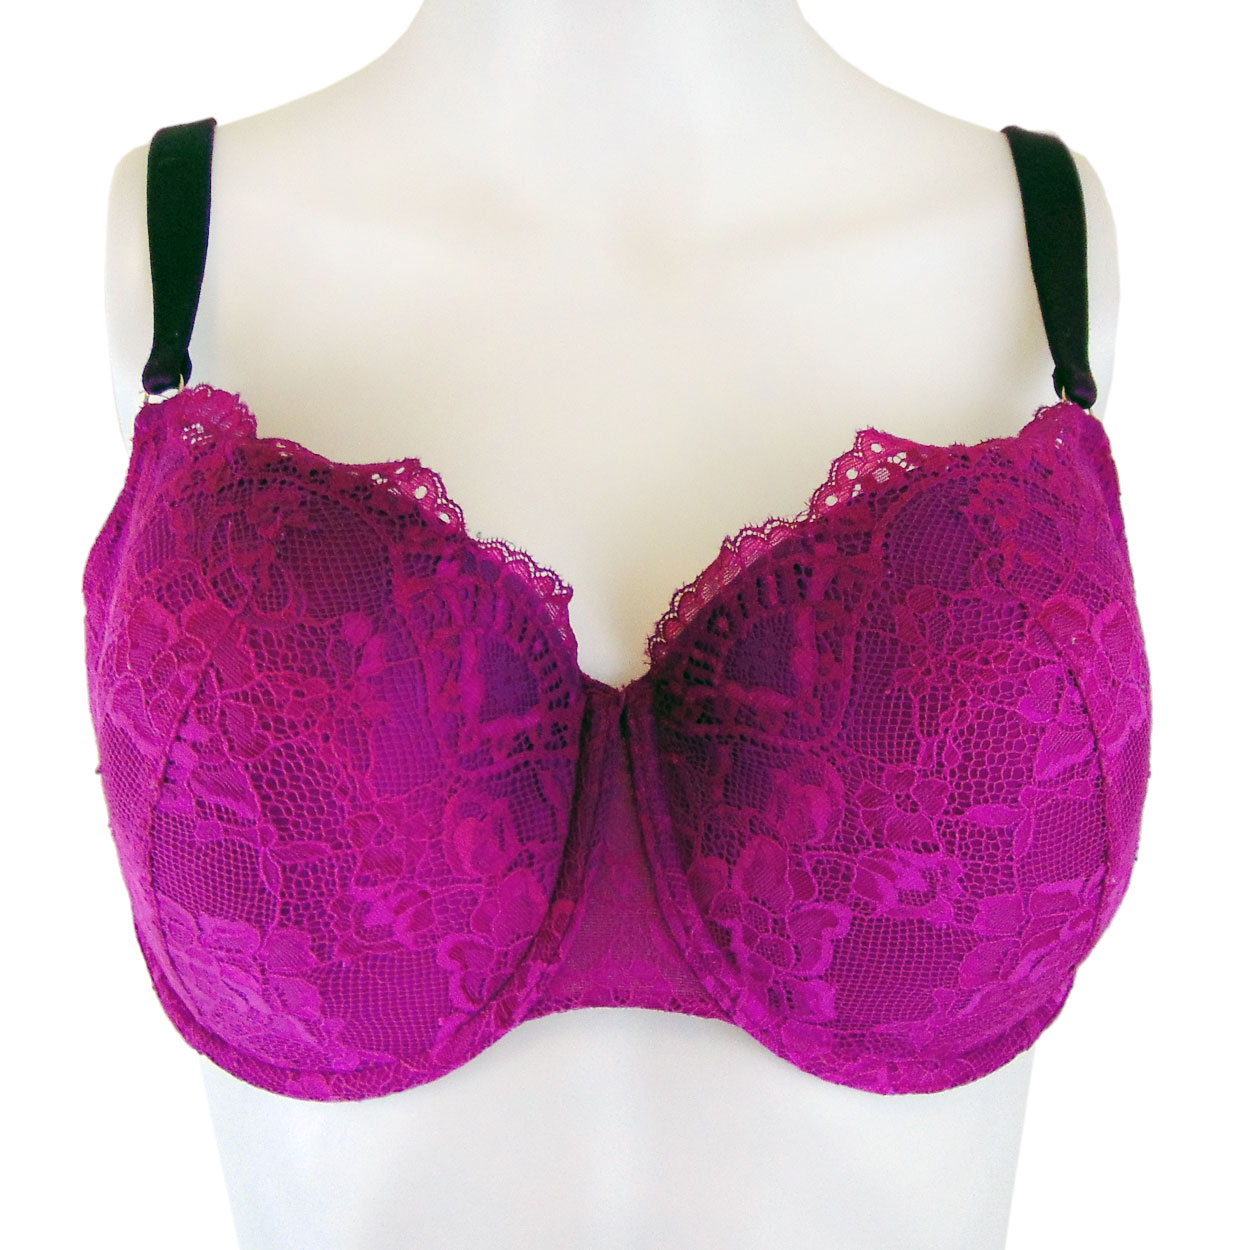 Victoria's Secret Bras- 2 bras size 34 DDD